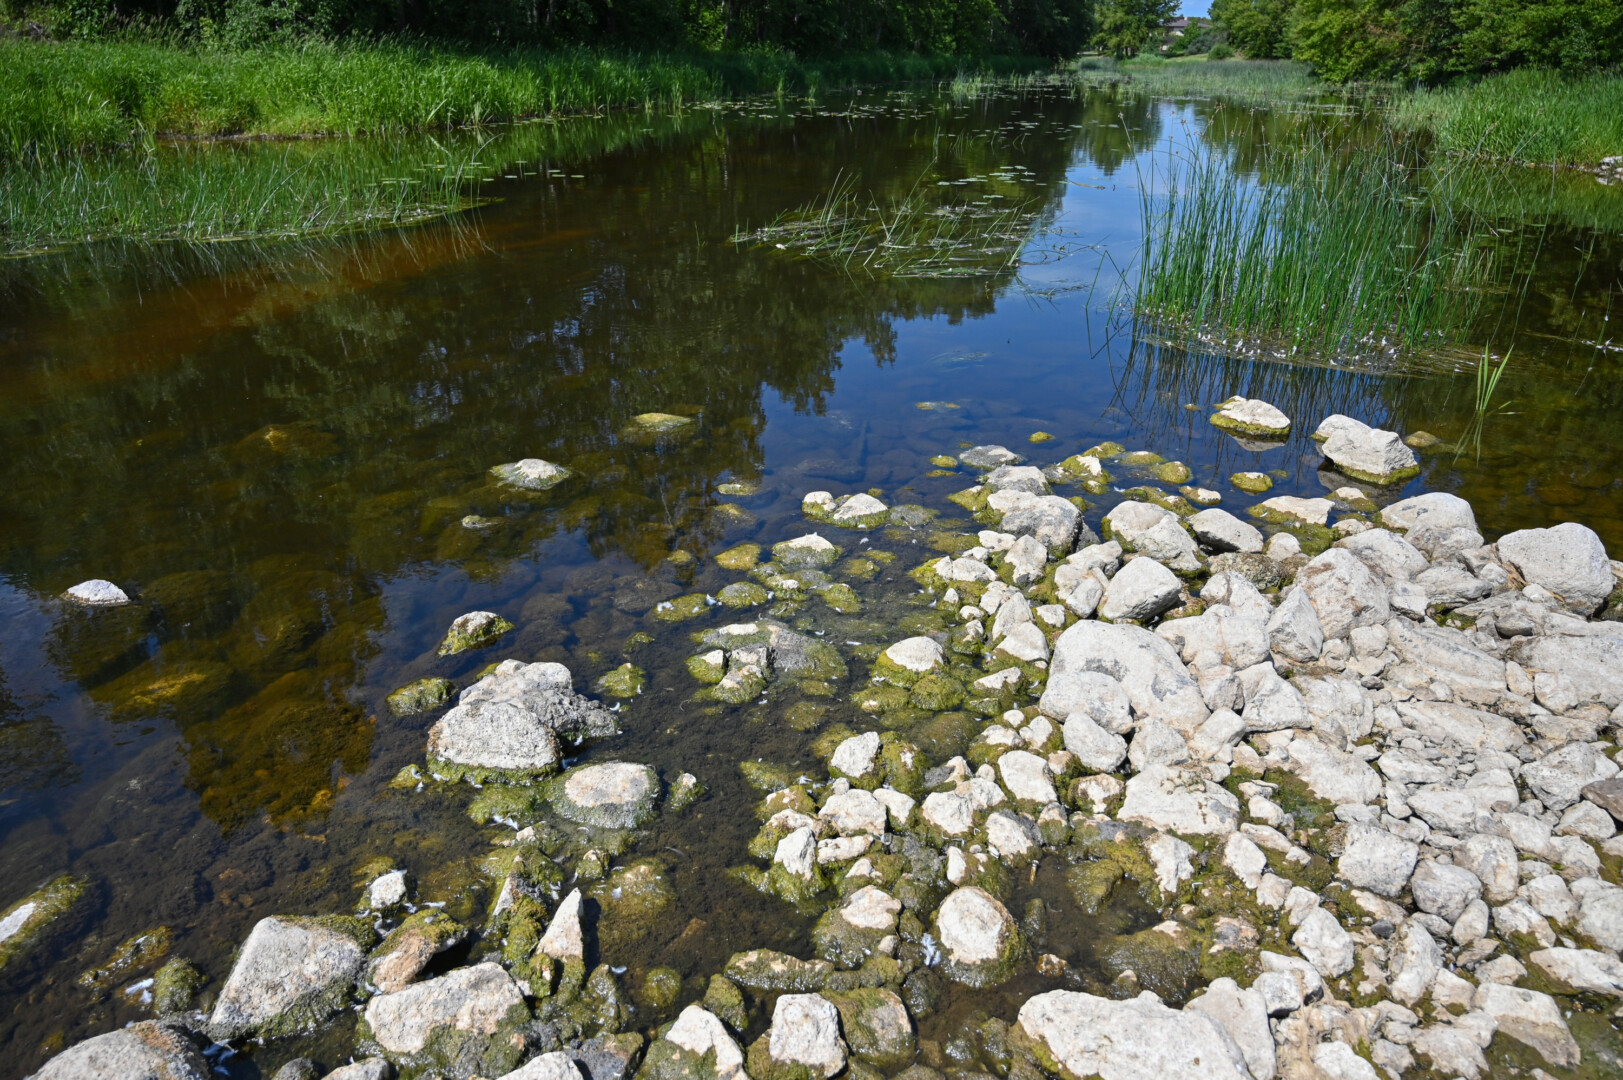 Lietuvos hidrometeorologijos tarnyba praneša, kad didžiojoje šalies teritorijos dalyje vandens telkiniai jau kurį laiką lokaliai buvo varginami hidrologinės sausros, o nuo liepos 17 d. hidrologinė sausra skelbiama visoje Lietuvoje.